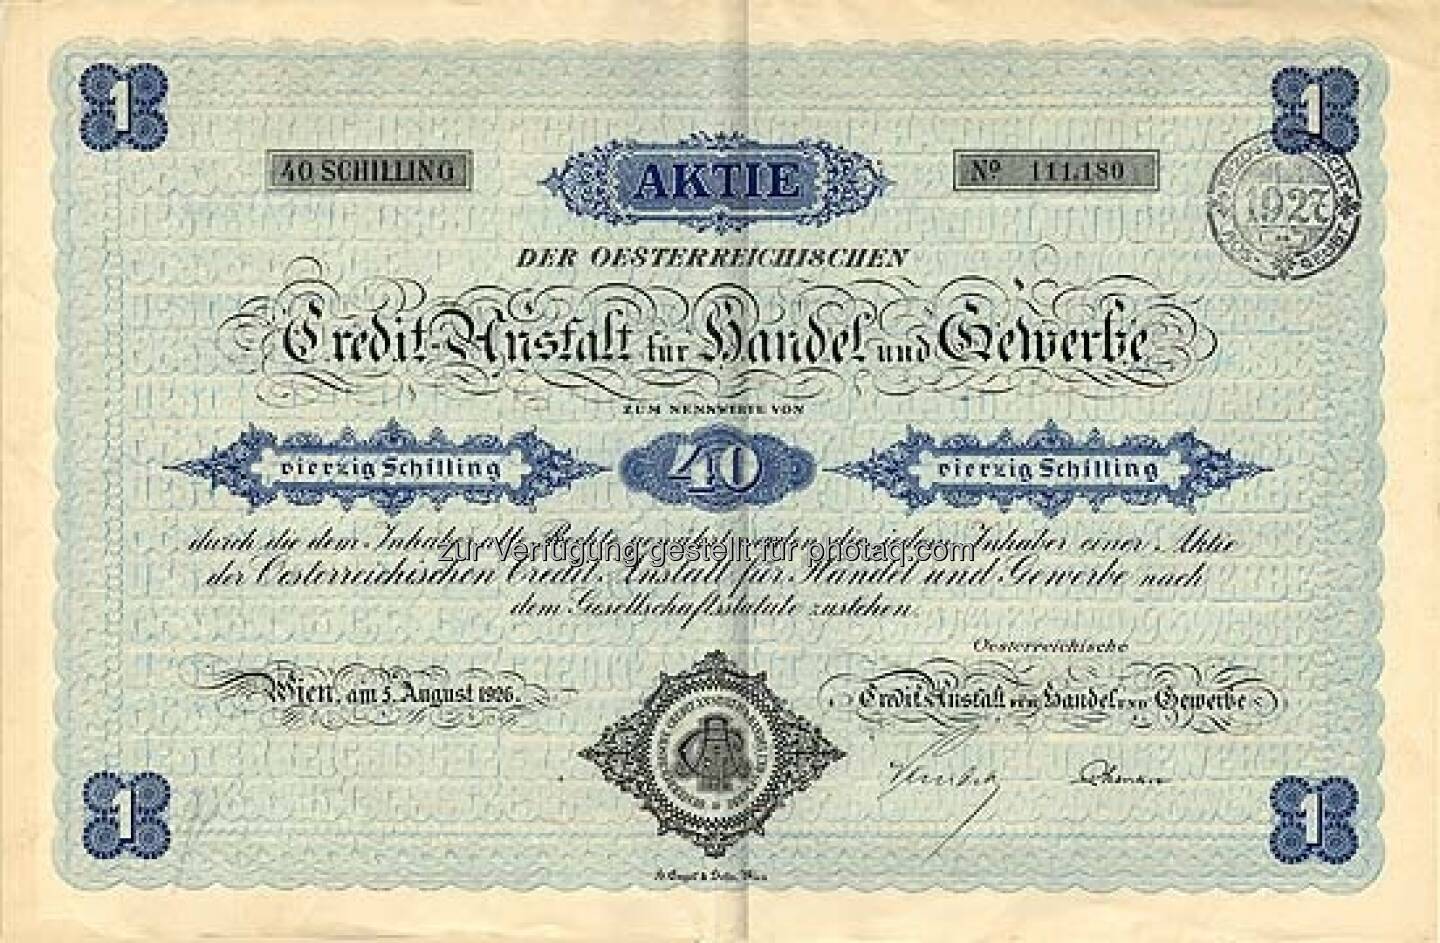 Österreichische Credit-Anstalt für Handel und Gewerbe: Die Bank ist ein Vorfahre der Bank Austria Creditanstalt. Sie wurde 1855 von Anselm Salomon Freiherr von Rothschild gegründet. Das historische Papier von 1926 lautet auf 40 Schilling und ist entwertet.